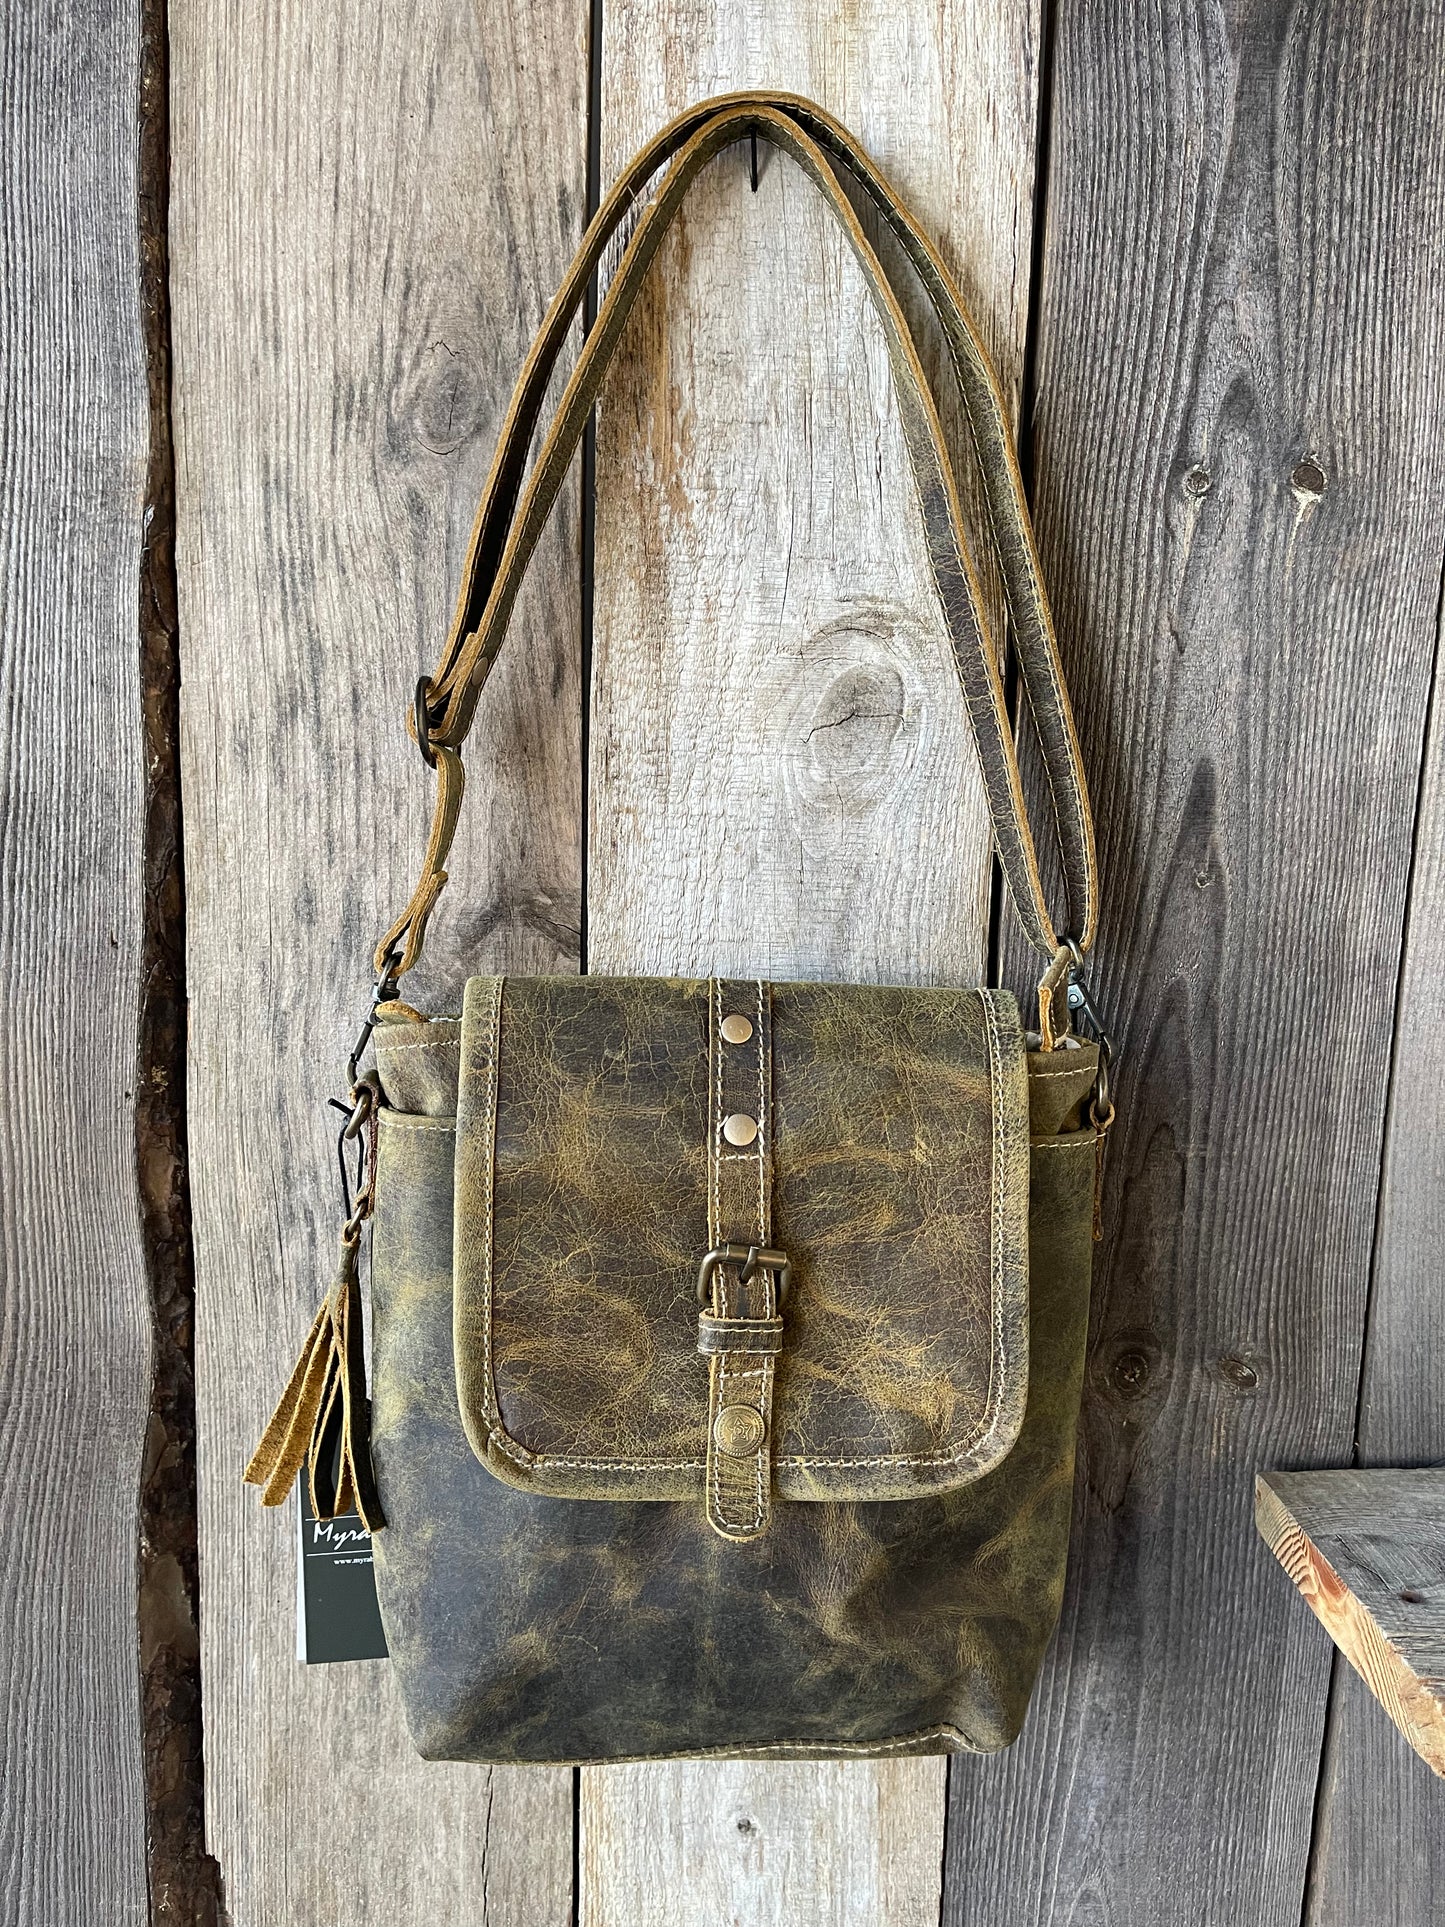 Myra Bag - Brown Beauty Leather Bag